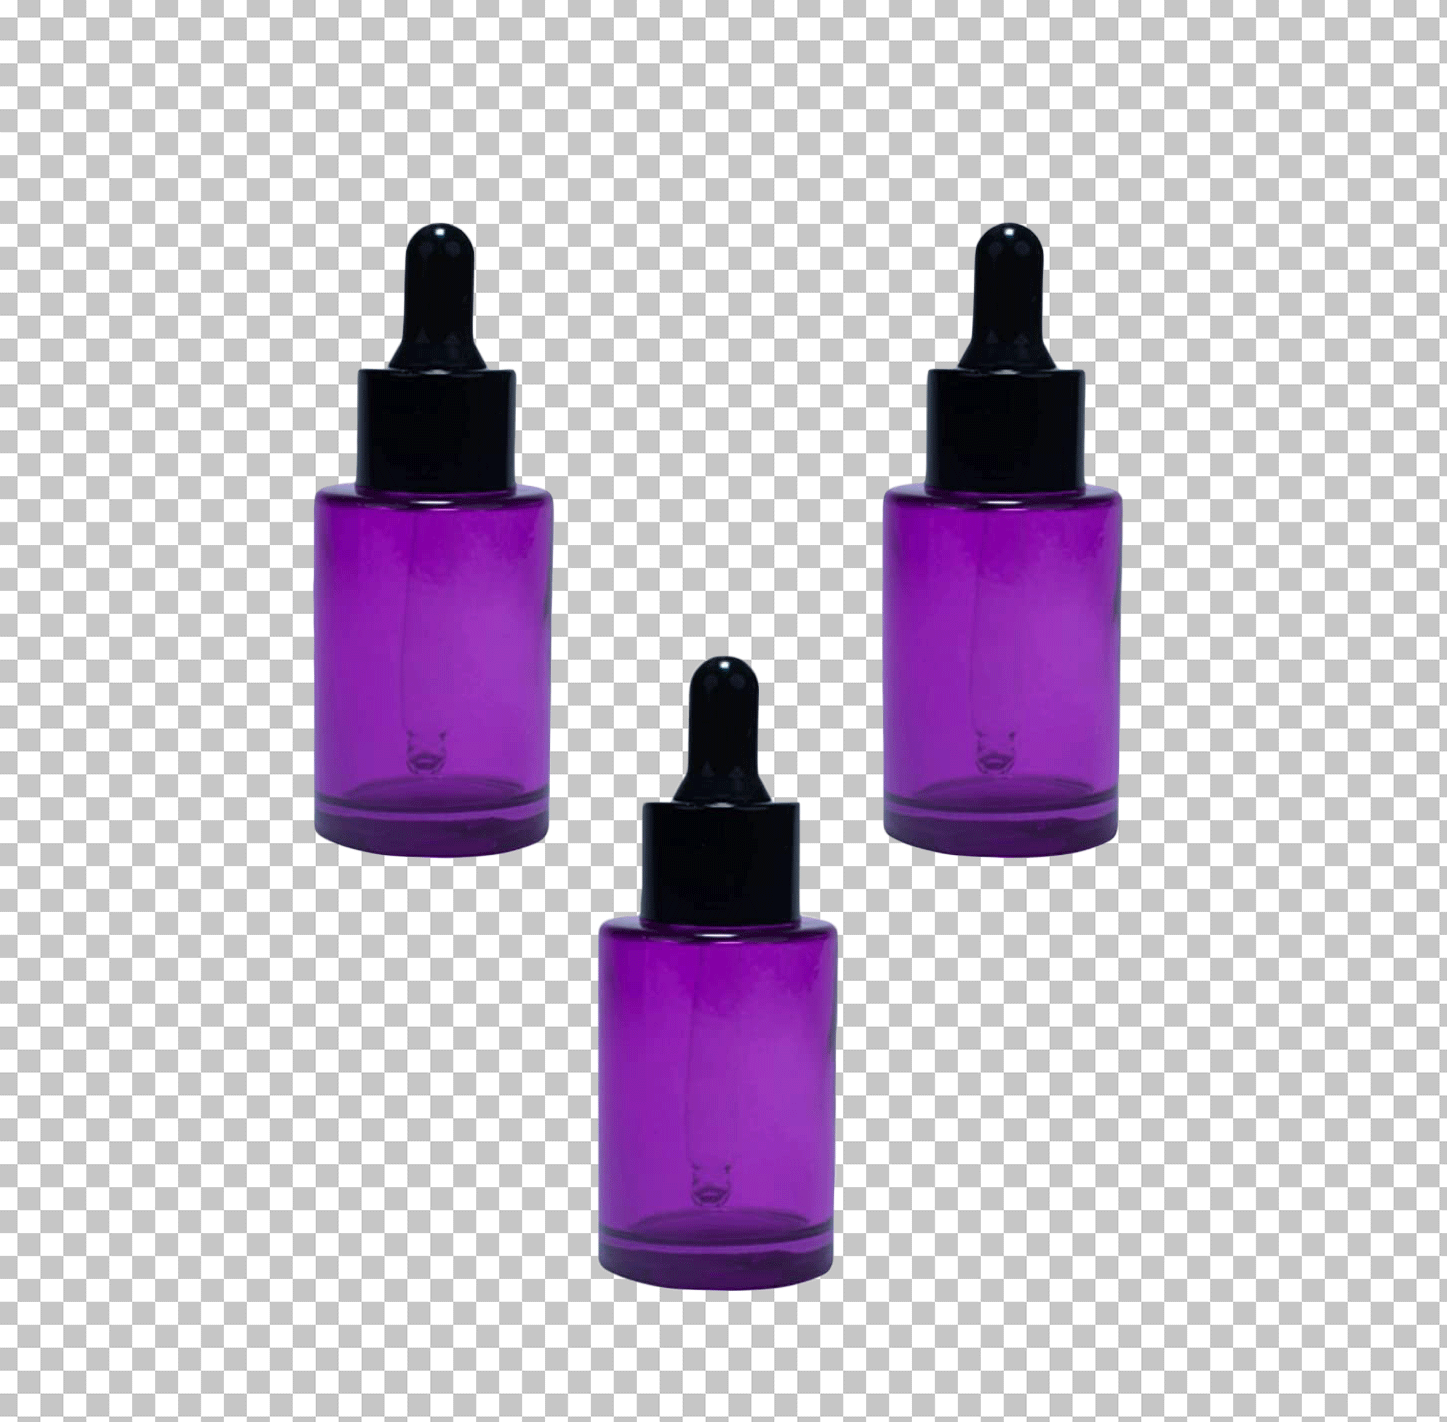 Three purple colour bottle png image